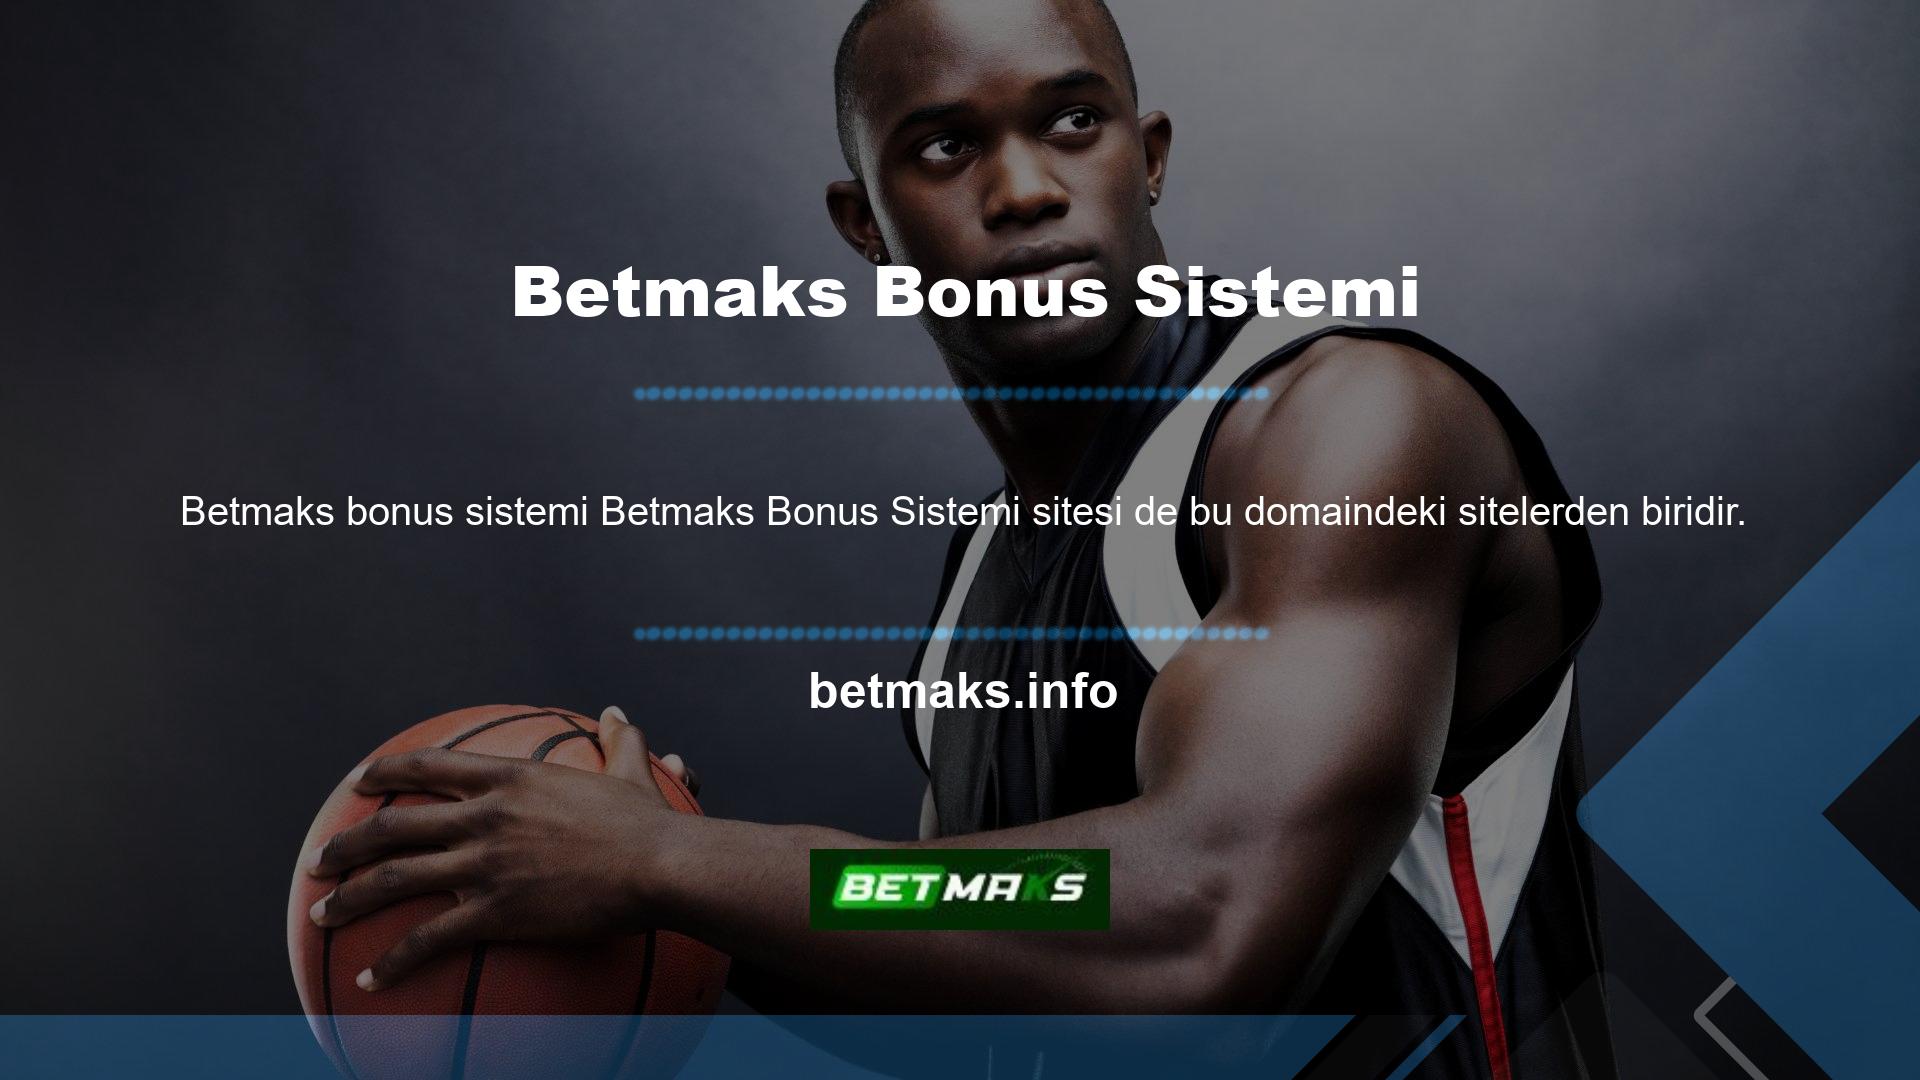 Betmaks, ekibi ve sistemleriyle oyunculara çok çeşitli oyun seçenekleri sunmaktadır